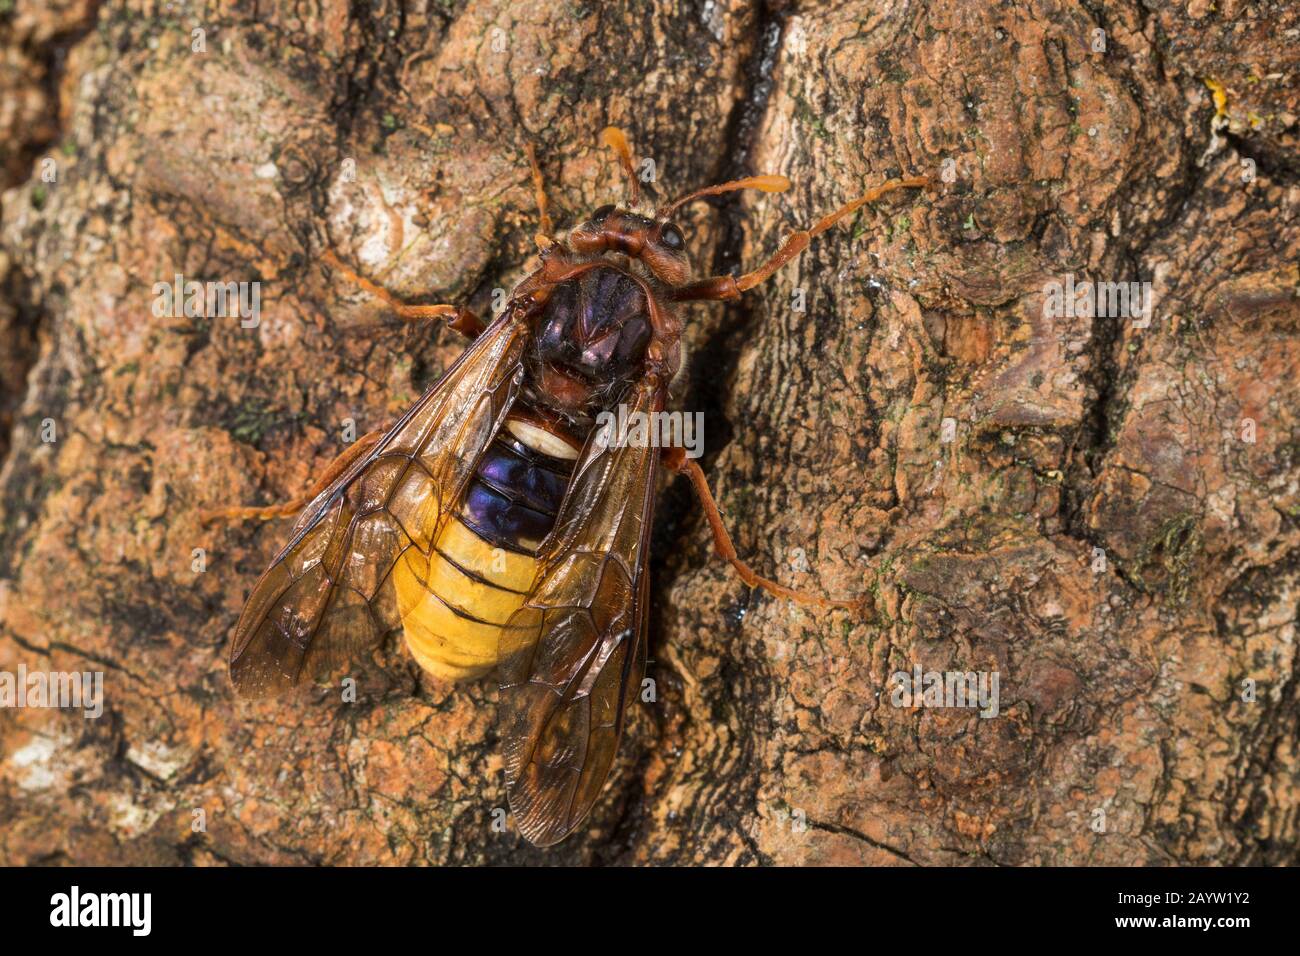 Hornet-Mimicking sawfly, Giant Willow Sawfly (Cimbex luteus, Cimbex lutea), Mimikry, sieht aus wie eine Hornet, Deutschland Stockfoto